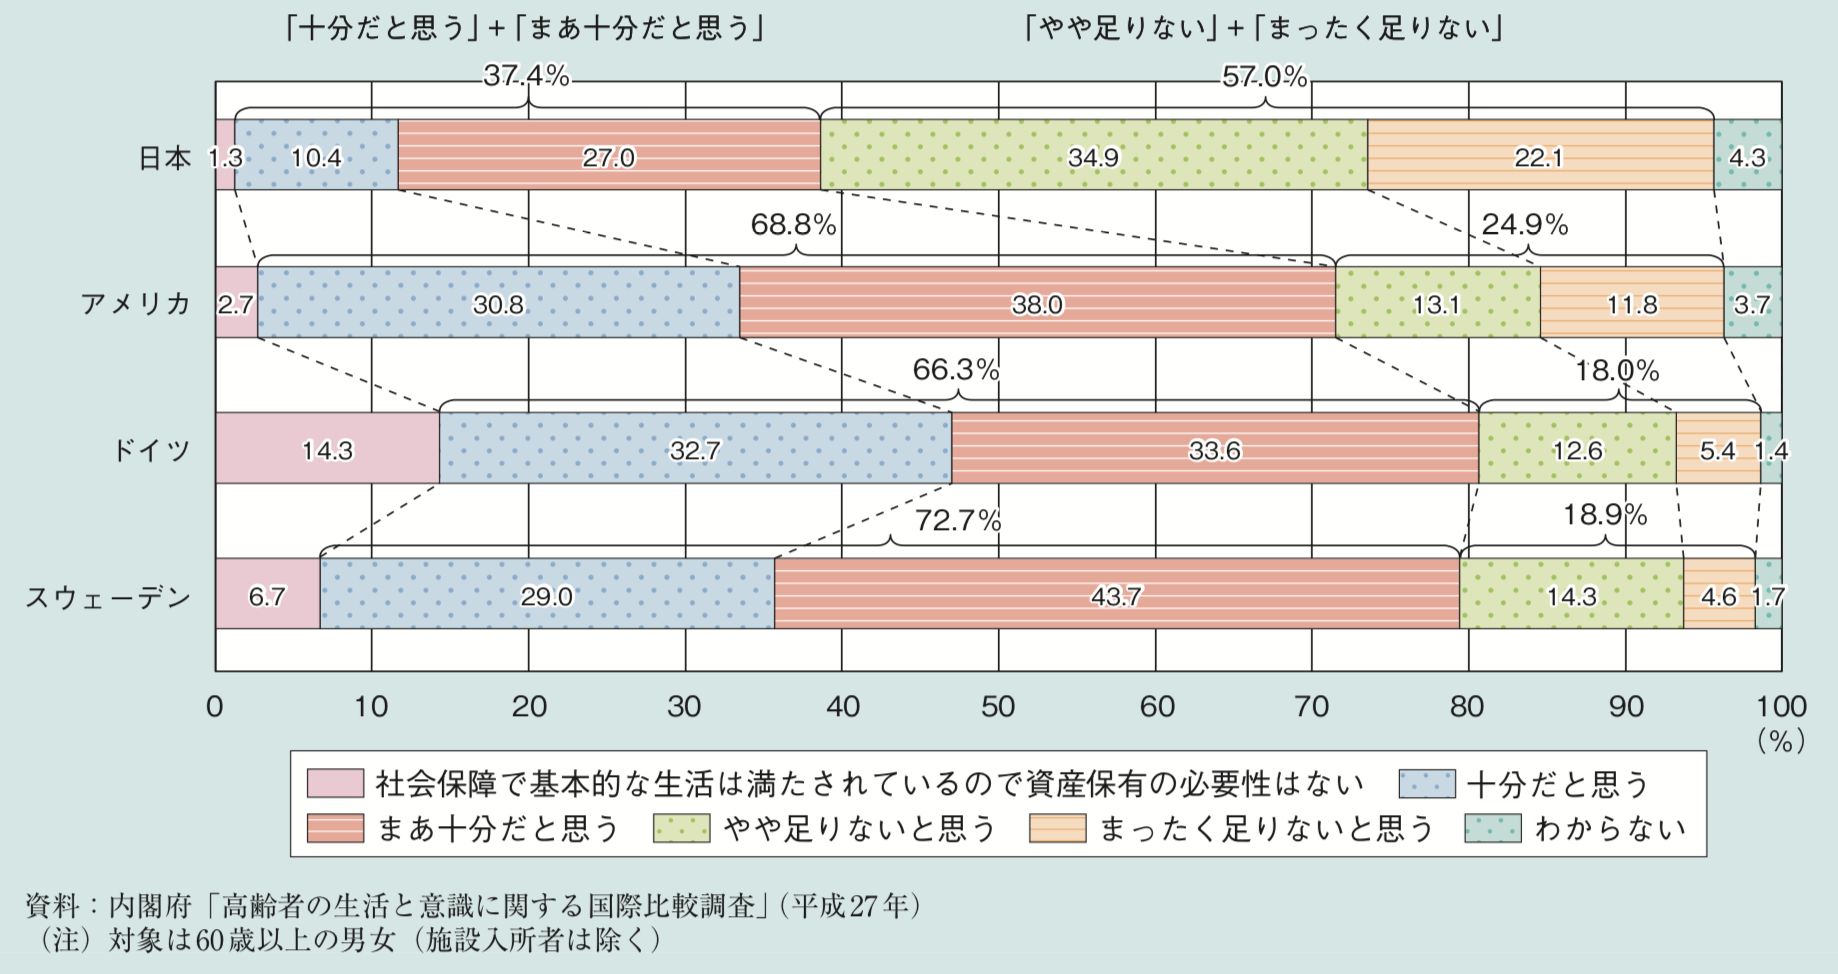 日本の高齢者の老後資産の割合